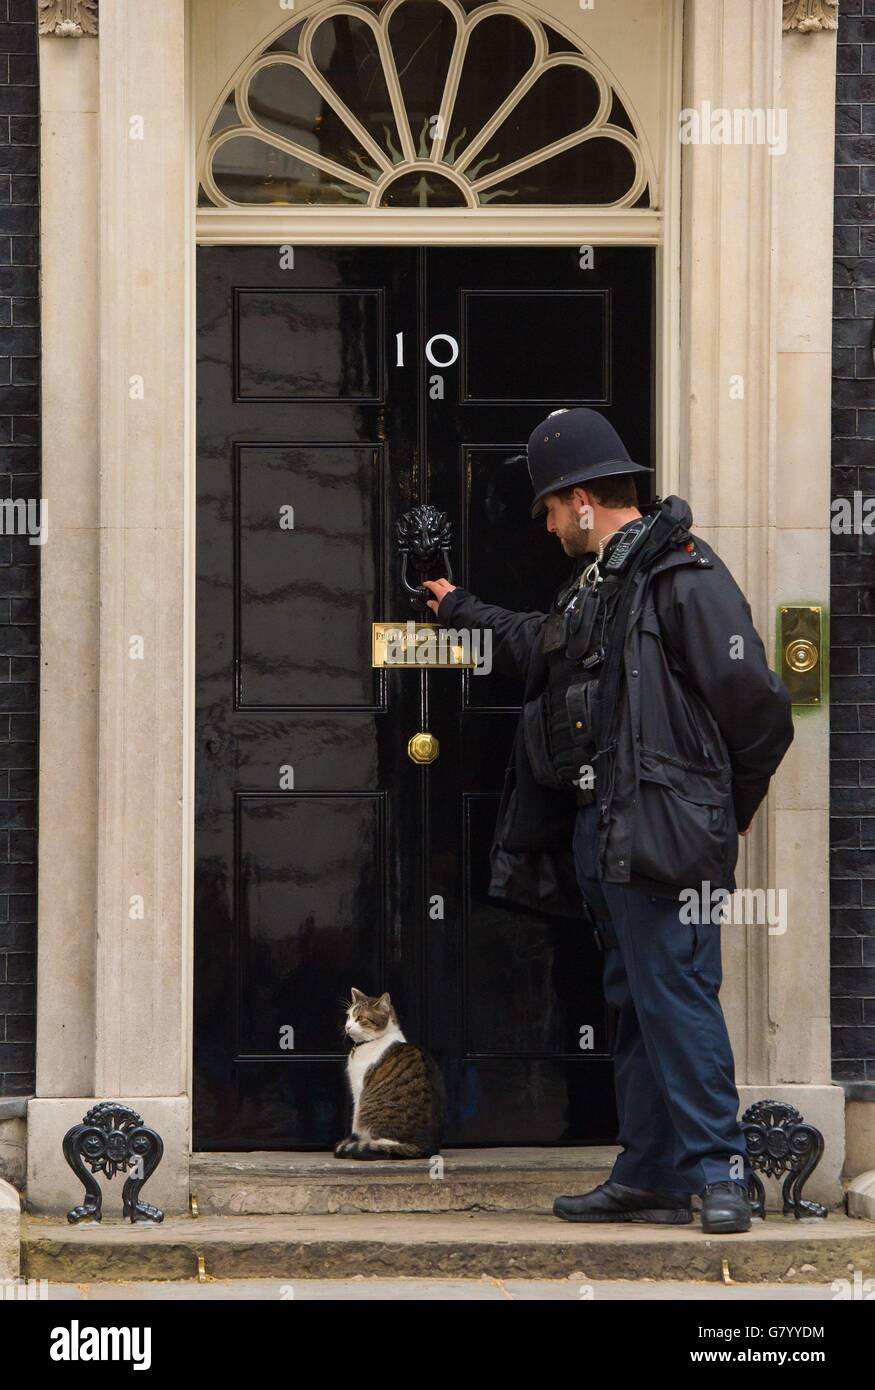 Larry, il gatto di Downing Street, attende a due passi mentre un poliziotto bussa alla porta di 10 Downing Street, a Westminster, Londra, dopo la vittoria elettorale del primo ministro David Cameron. Foto Stock